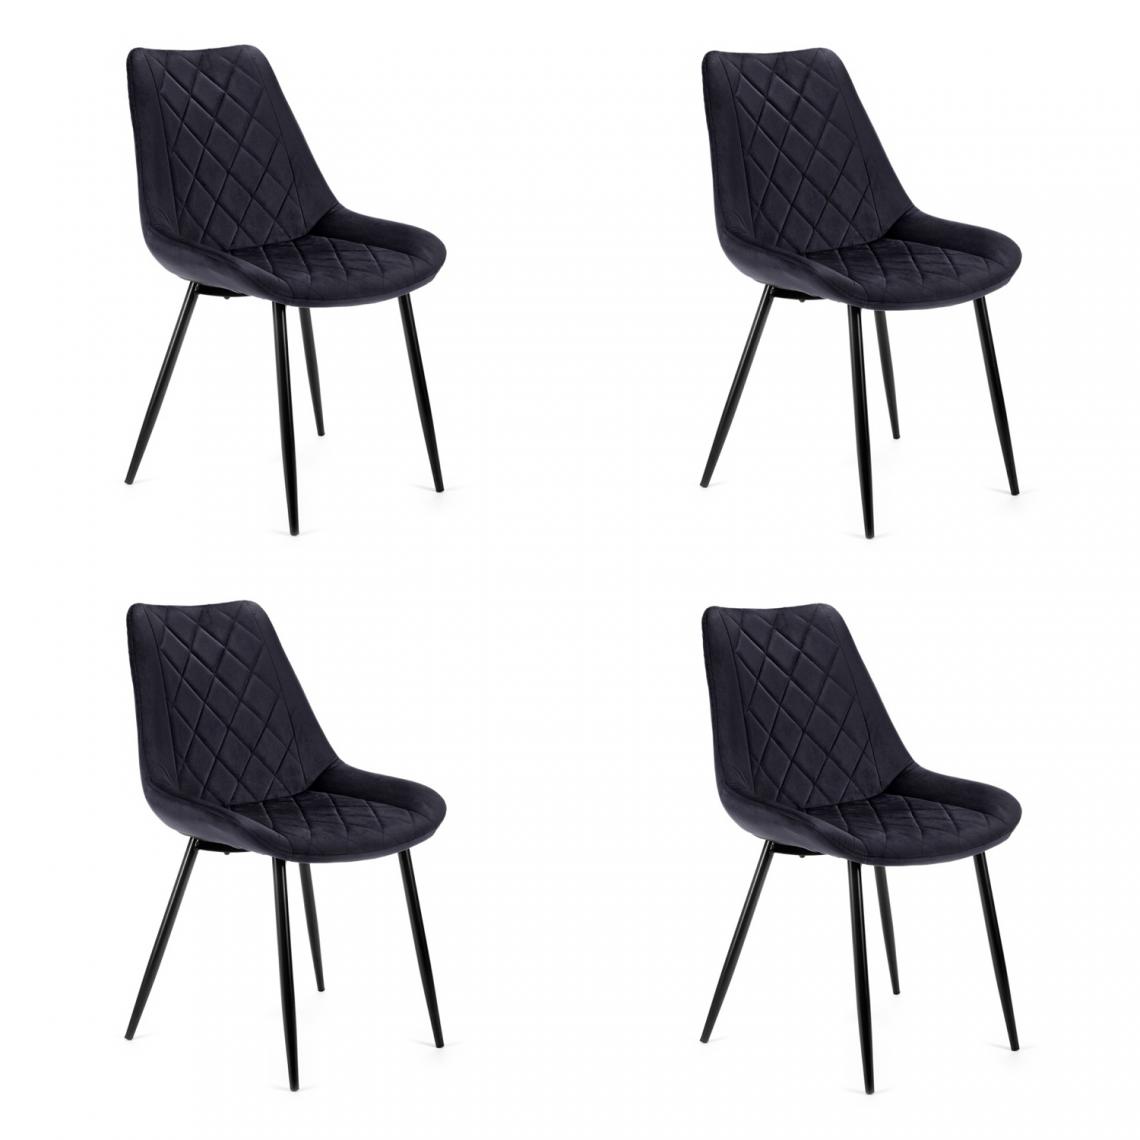 Hucoco - TERLO - Chaise rembourrée 4 pcs style moderne salon/salle à manger - 84x44x43 - Pieds en métal - Noir - Chaises